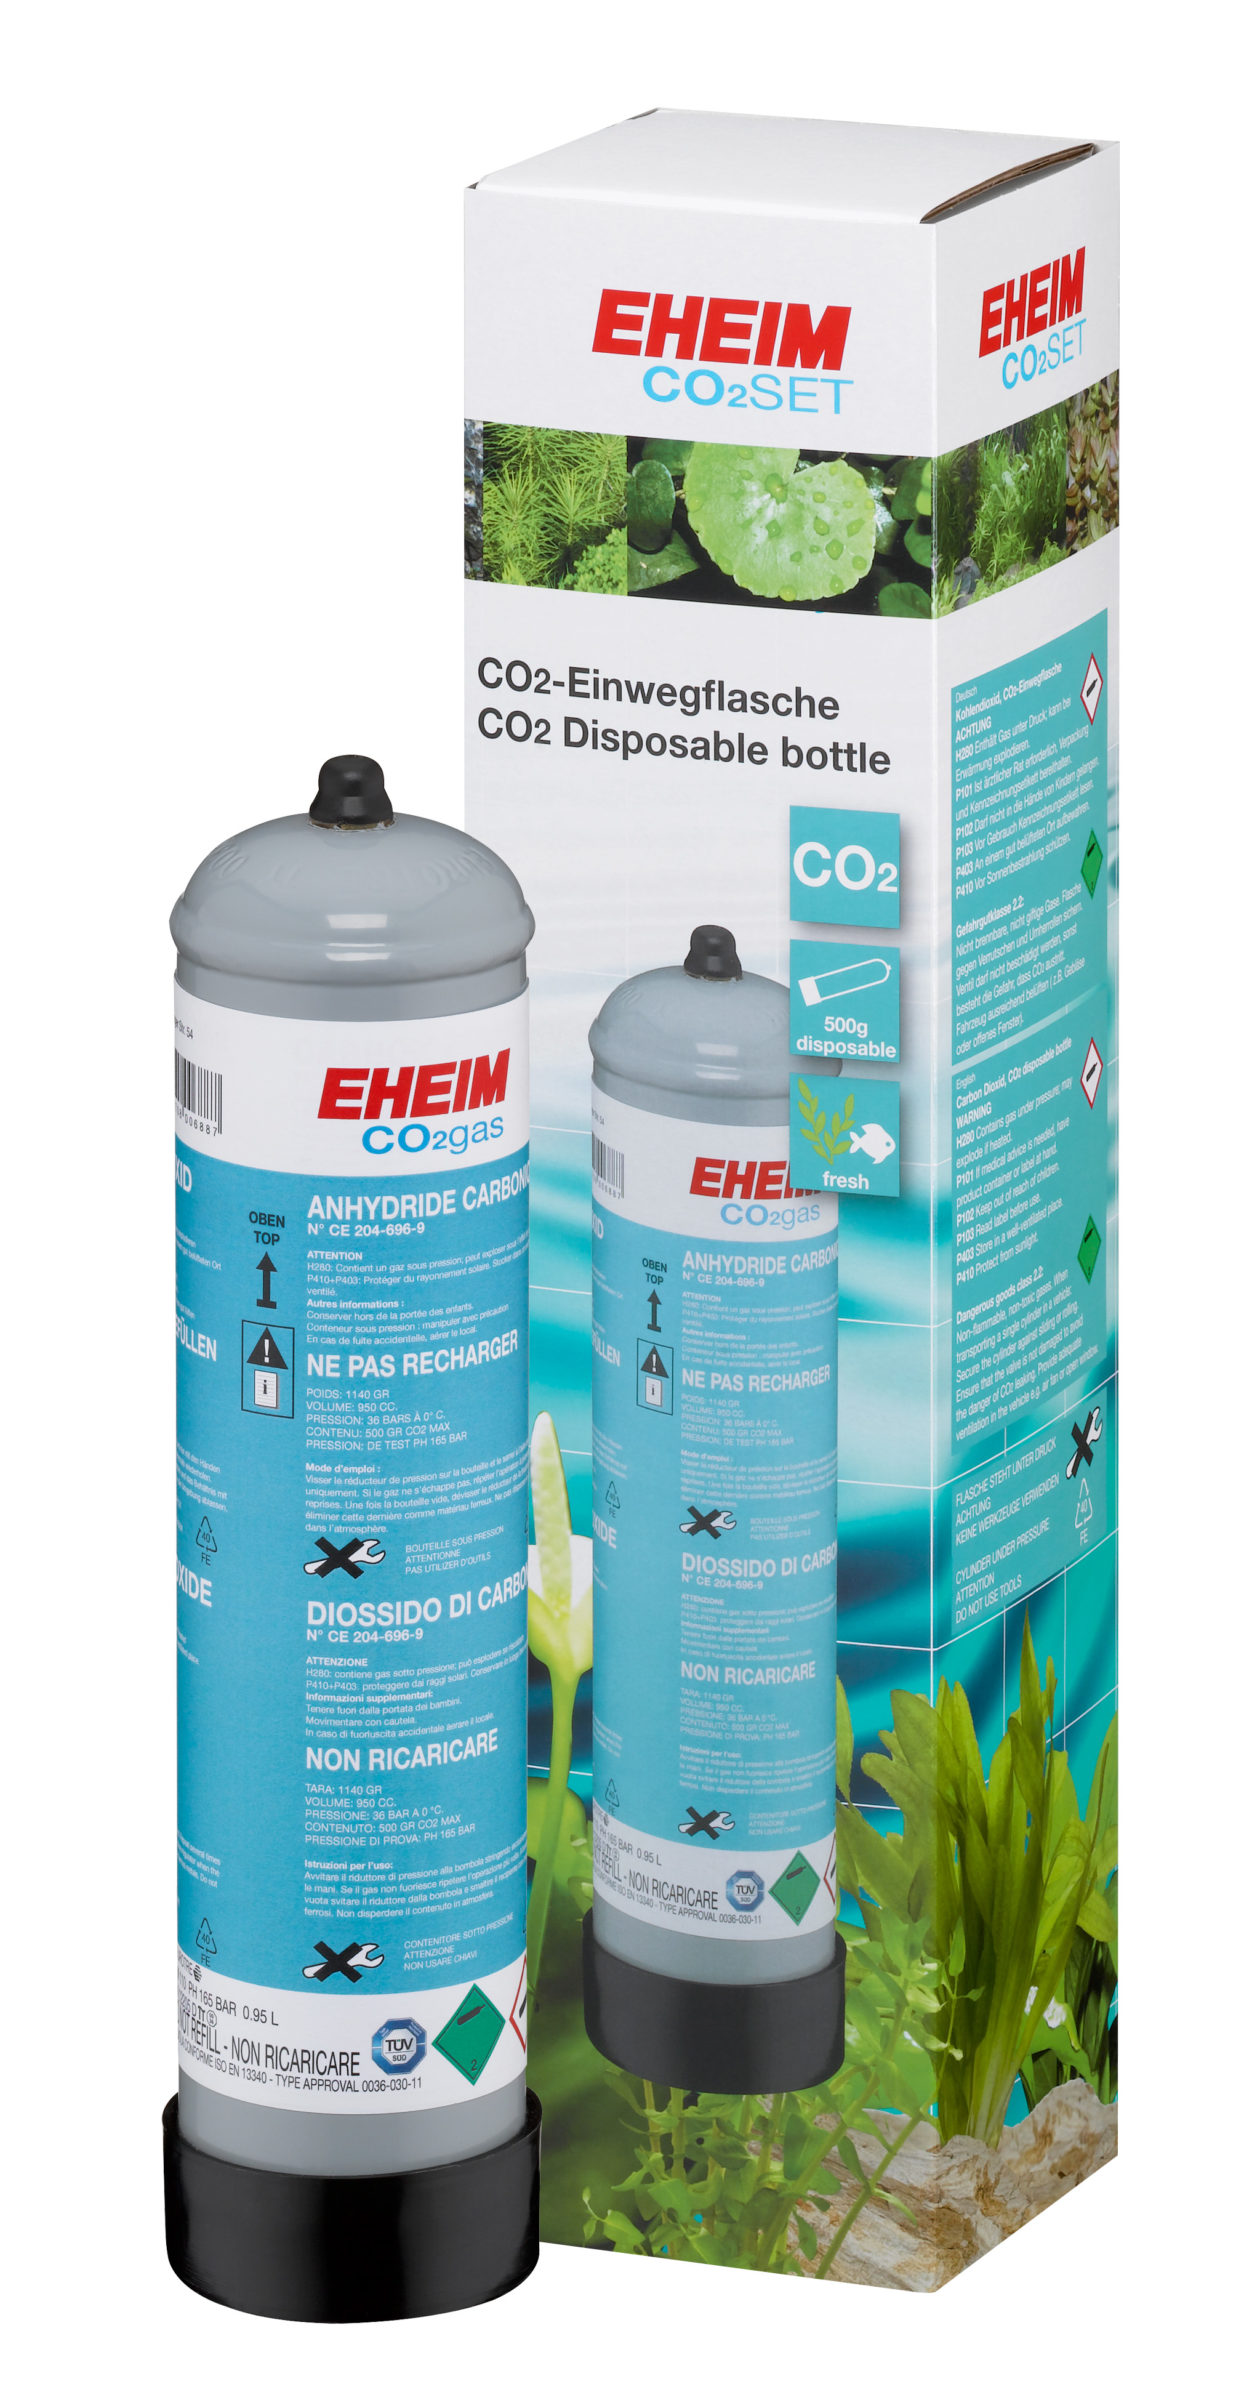 Set completo de CO2 de 500g desechable EHEIM CO2 SET 200 detalle 3